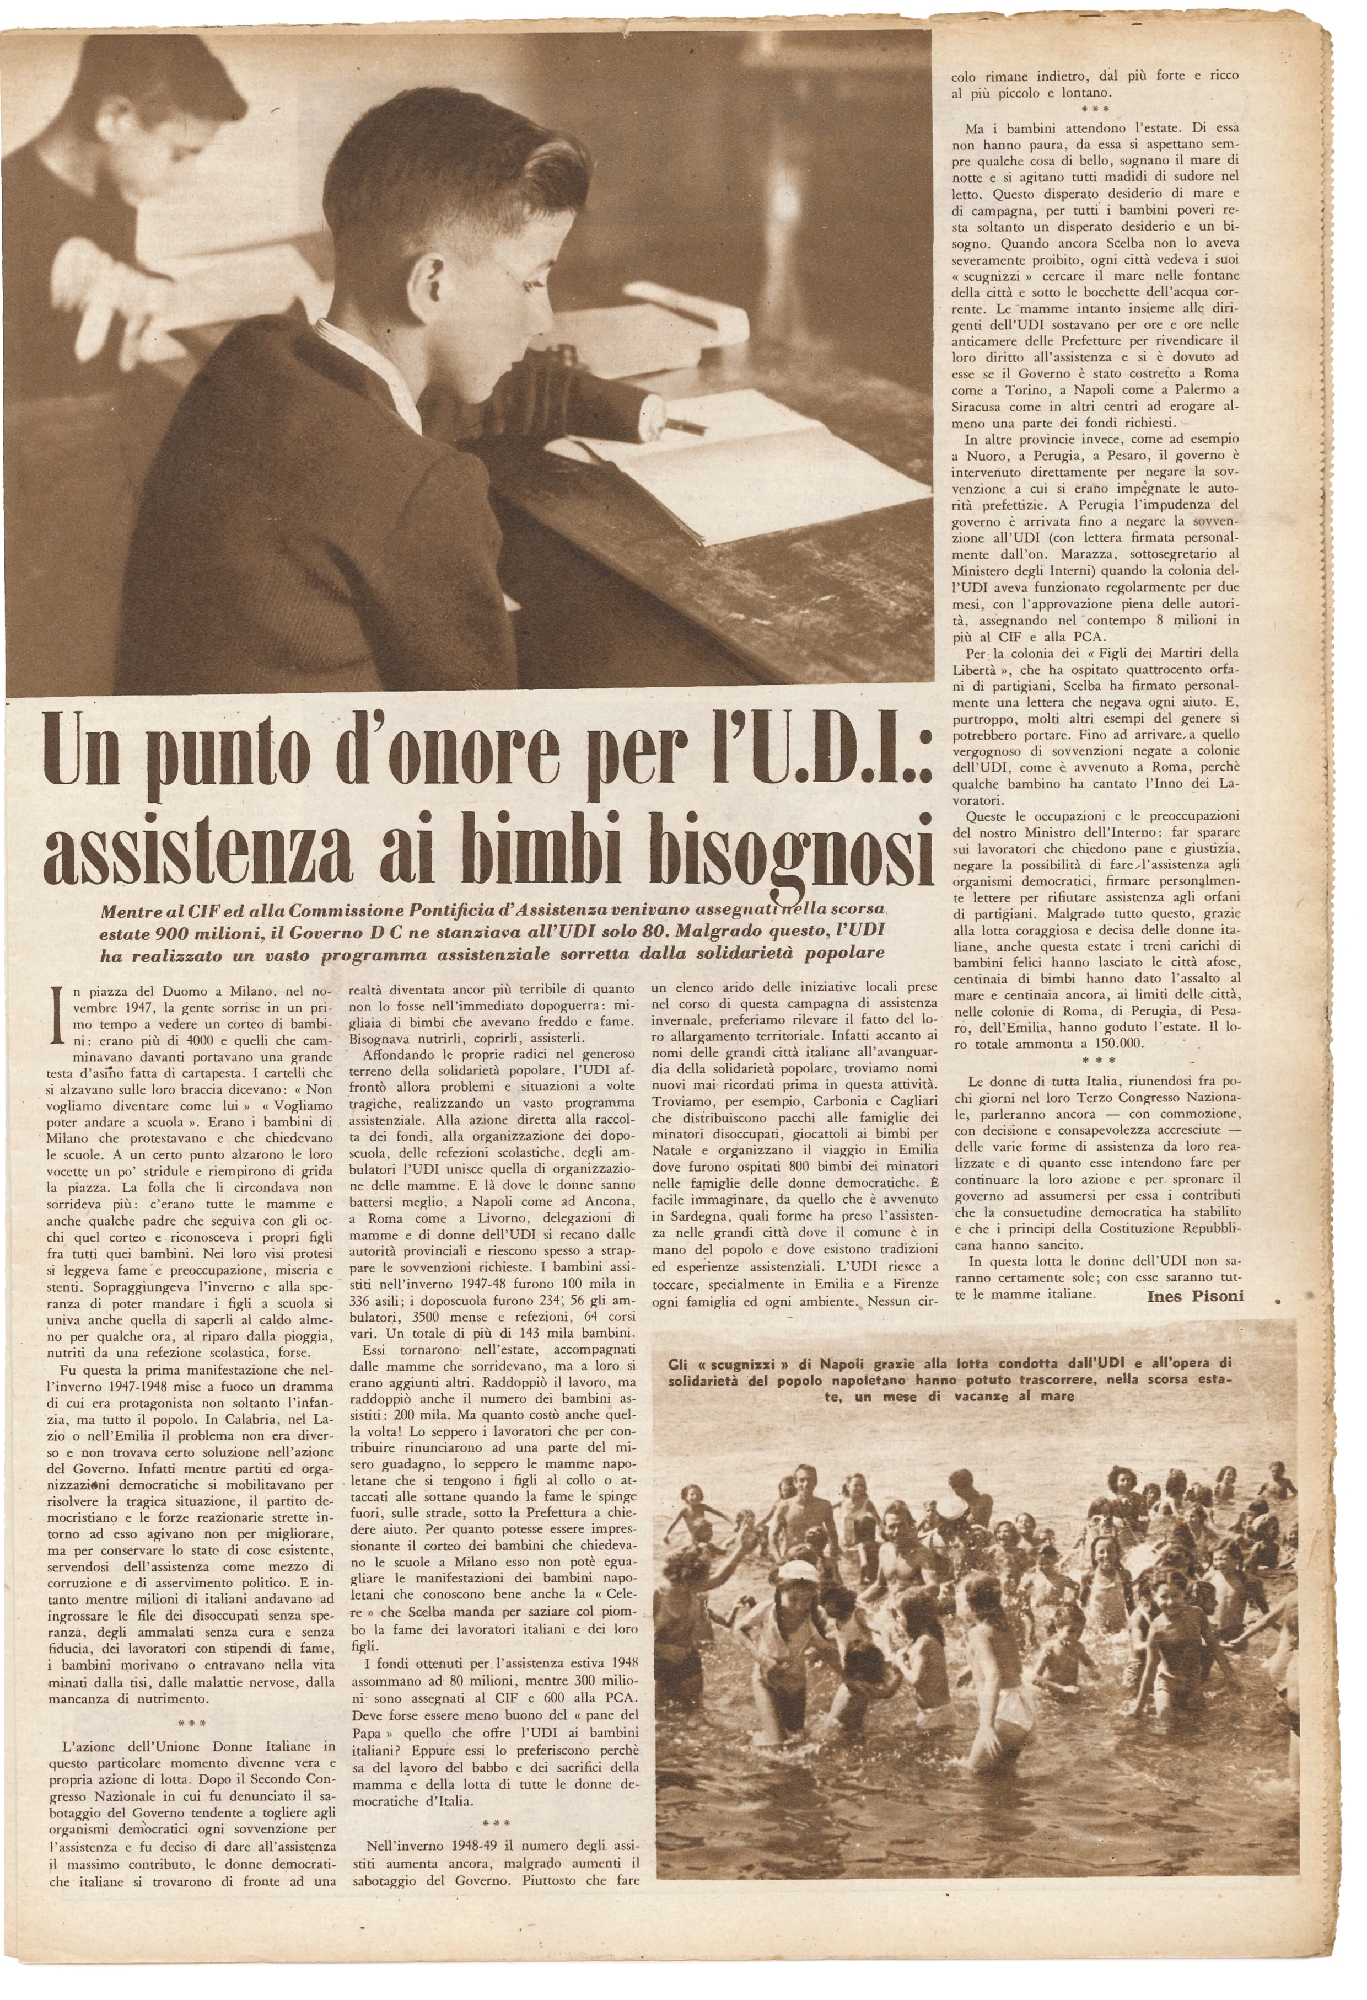 Foto: Il mese dell’amicizia tra Italia e URSS/L’UDI dalla parte dei bambini / A Palermo, le miss d'Europa